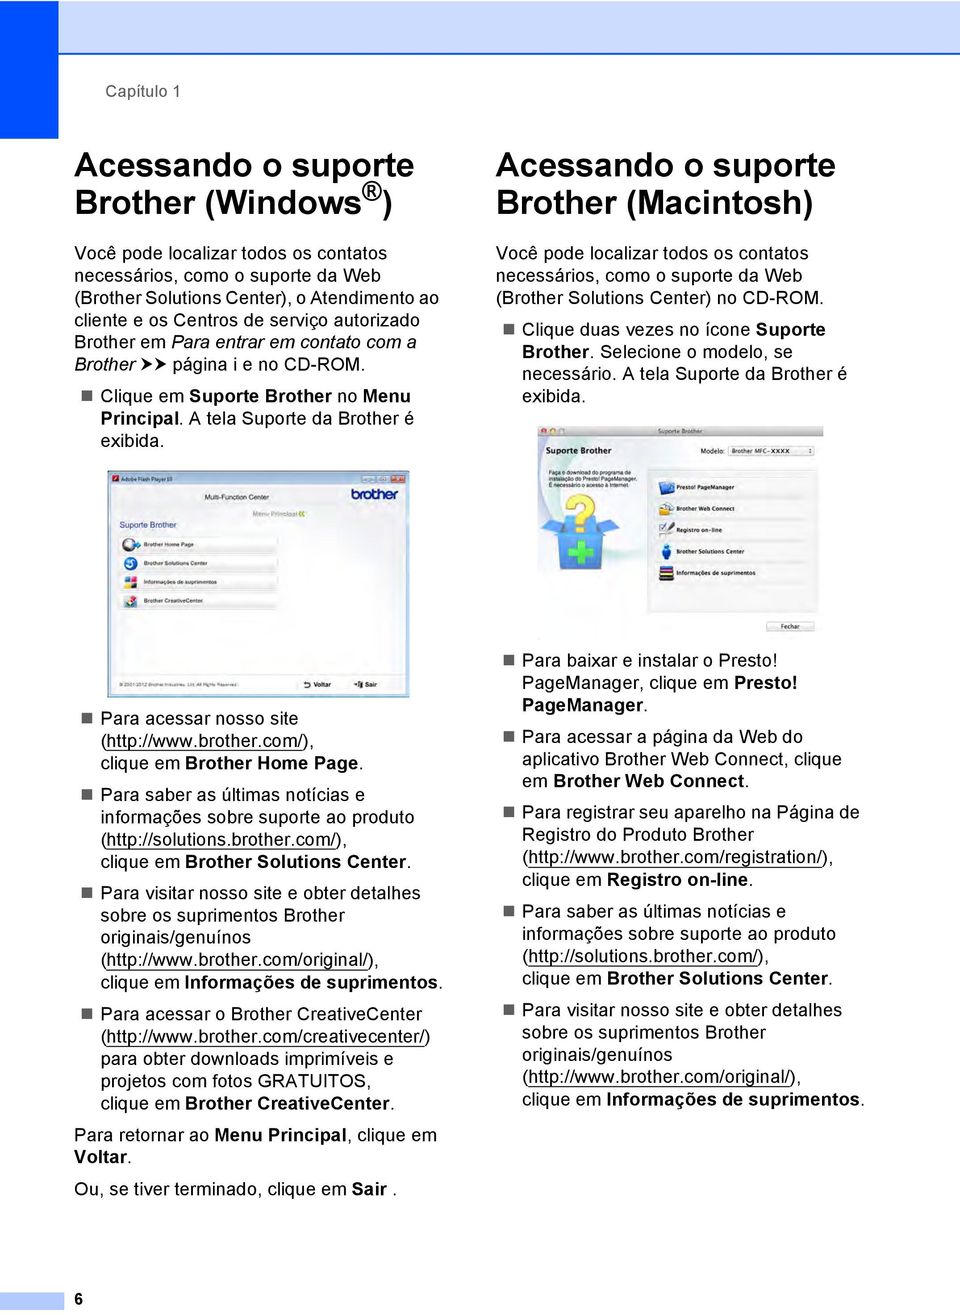 Acessando o suporte Brother (Macintosh) 1 Você pode localizar todos os contatos necessários, como o suporte da Web (Brother Solutions Center) no CD-ROM. Clique duas vezes no ícone Suporte Brother.